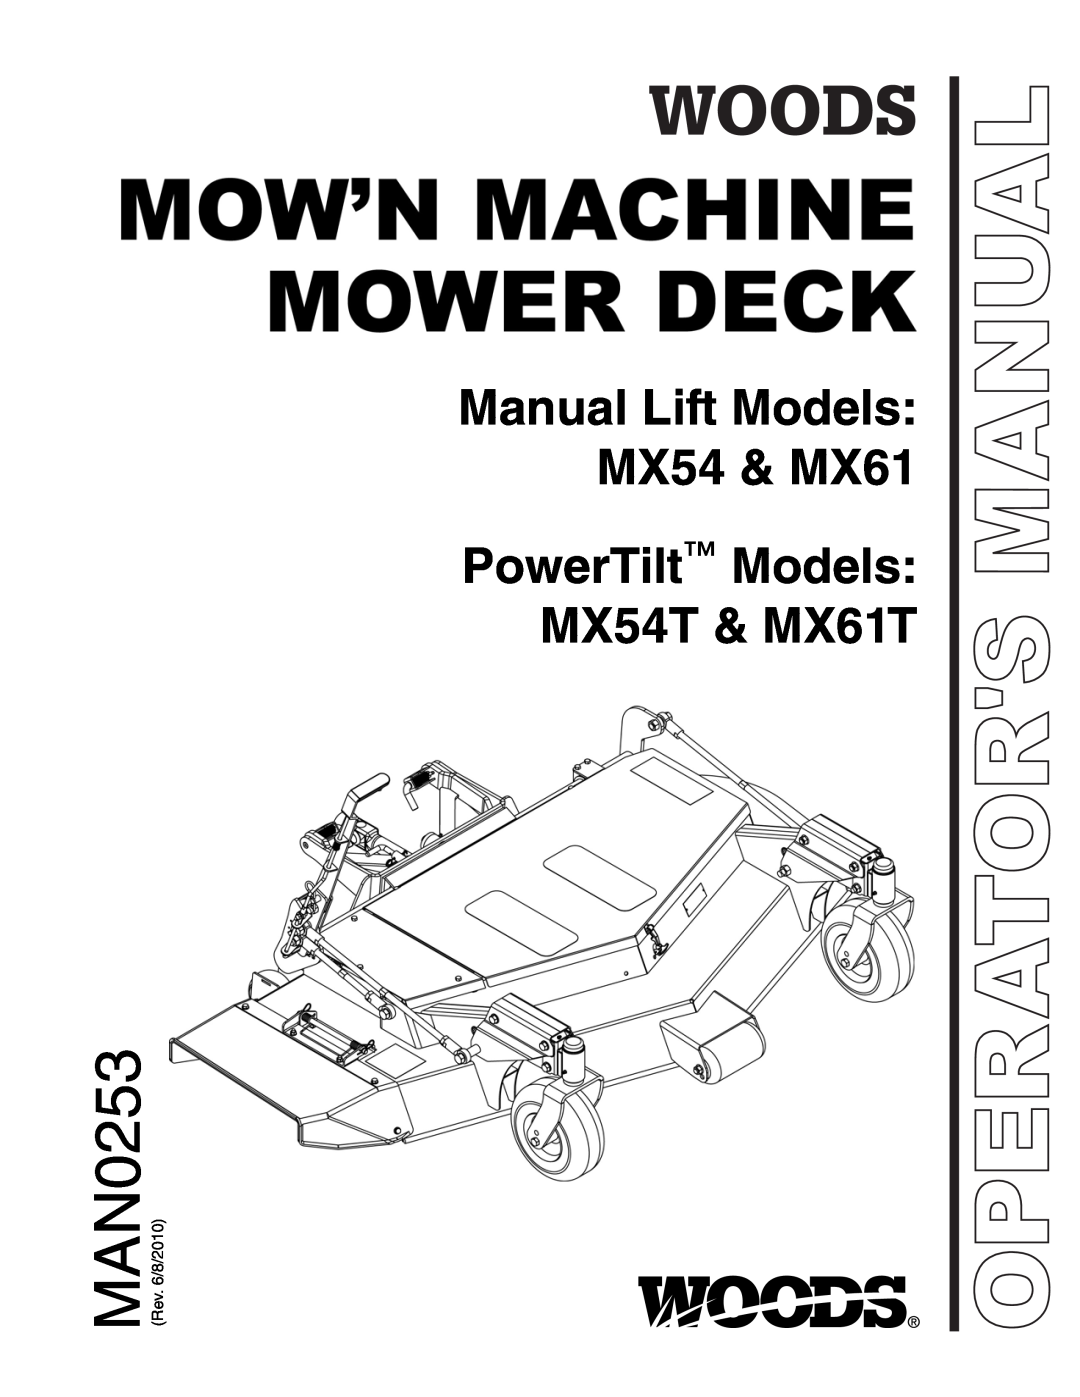 Woods Equipment manual MAN0253, Manual Lift Models MX54 & MX61 PowerTilt Models MX54T & MX61T, Operators Manual 